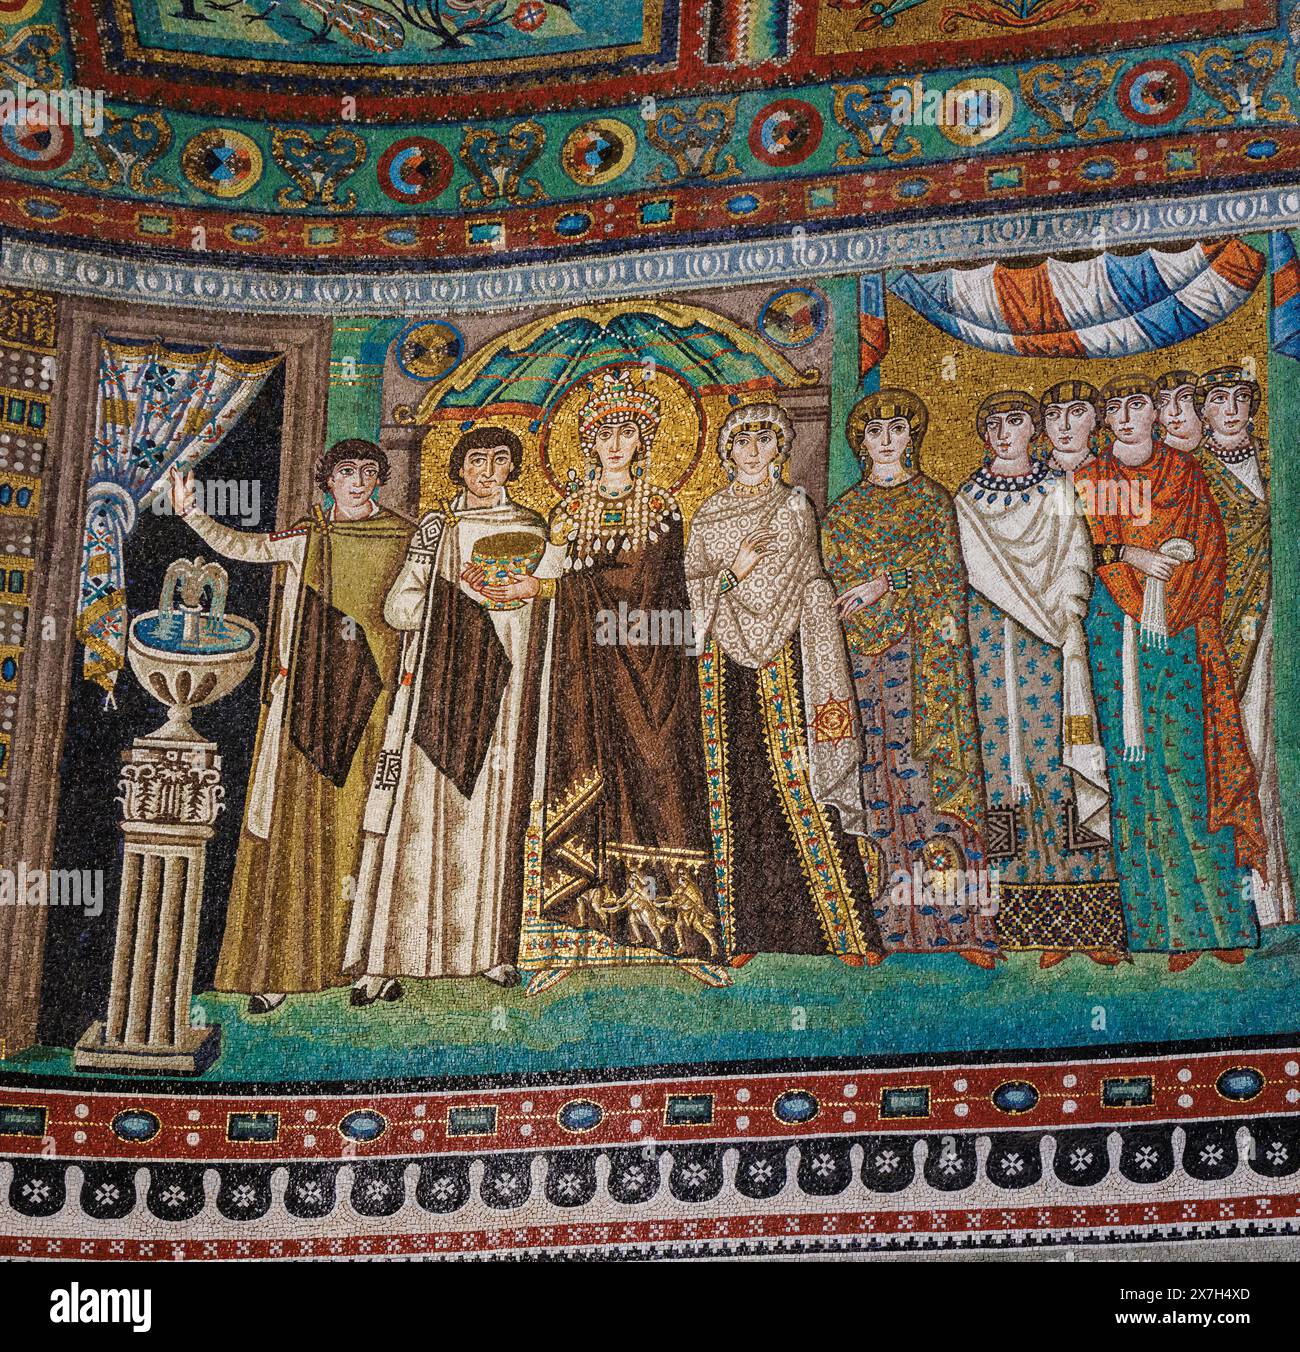 Ravenna, Provinz Ravenna, Italien. Mosaik in der Basilika San Vitale, die Kaiserin Theodora mit ihrem Hof zeigt. Sie hält die Kommunion ab Stockfoto